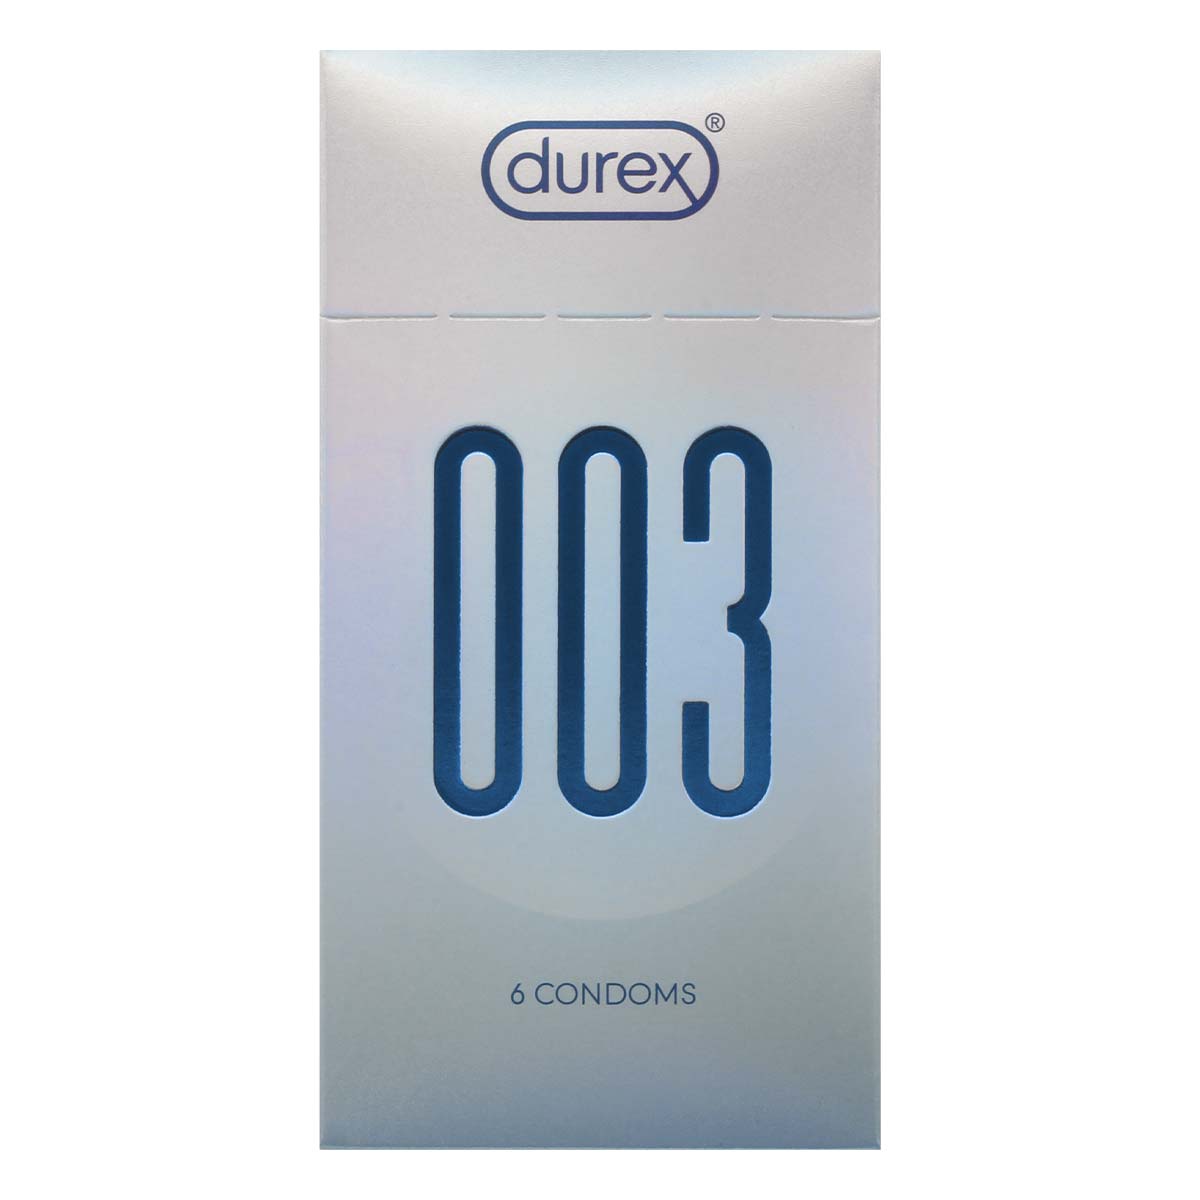 Durex 003 6's Pack High Elongation Waterborne Polyurethane Condom-p_2